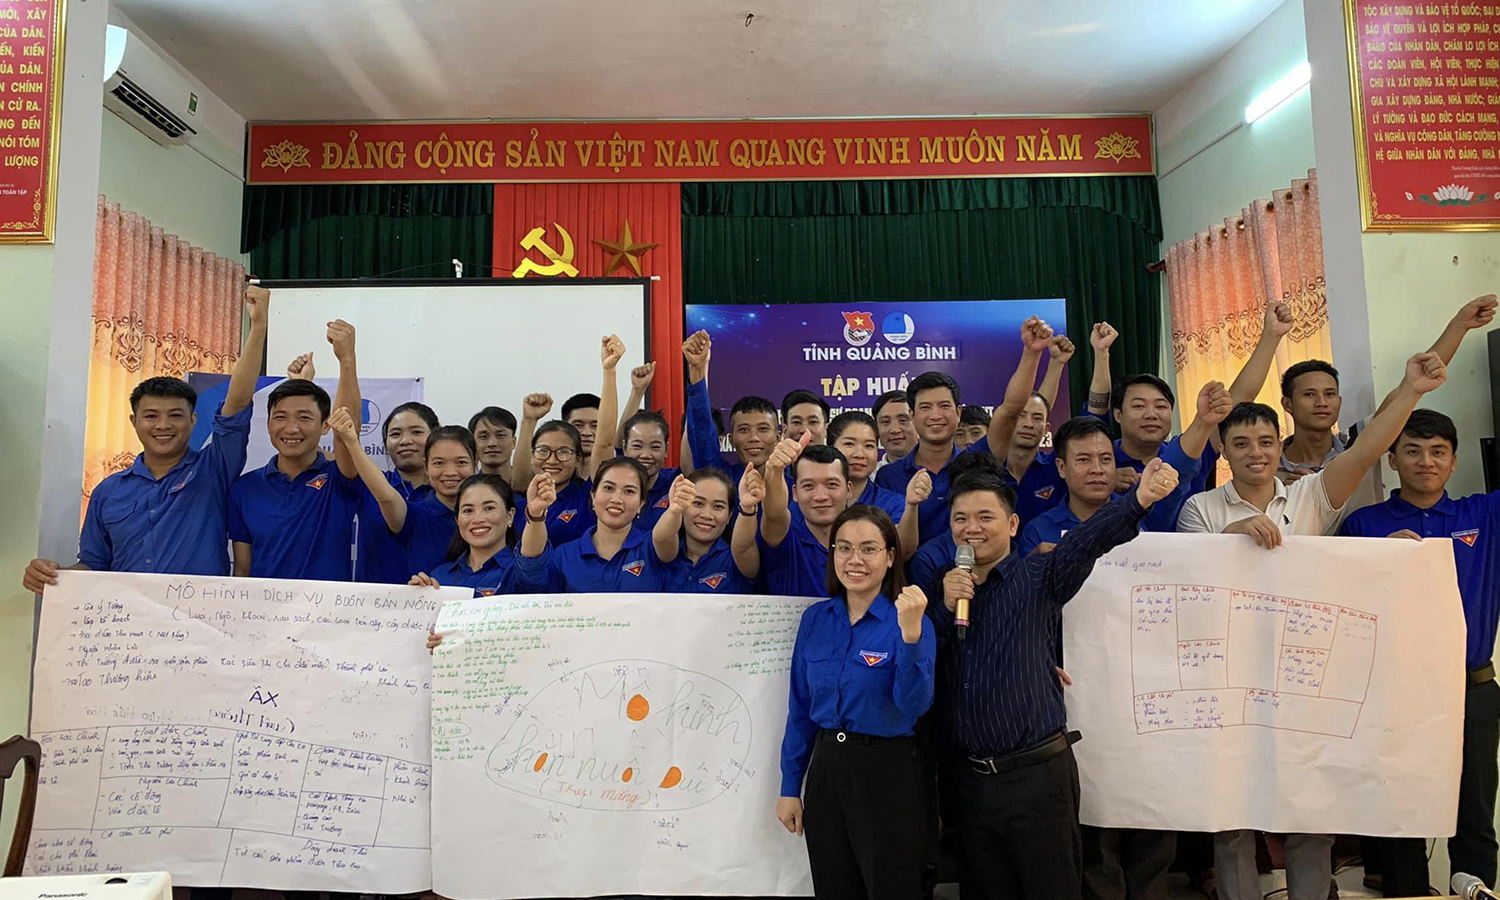 Tập huấn khởi nghiệp, khởi sự doanh nghiệp, thành lập tổ hợp tác, hợp tác xã và xây dựng mô hình phát triển kinh tế cho thanh niên huyện Tuyên Hóa.